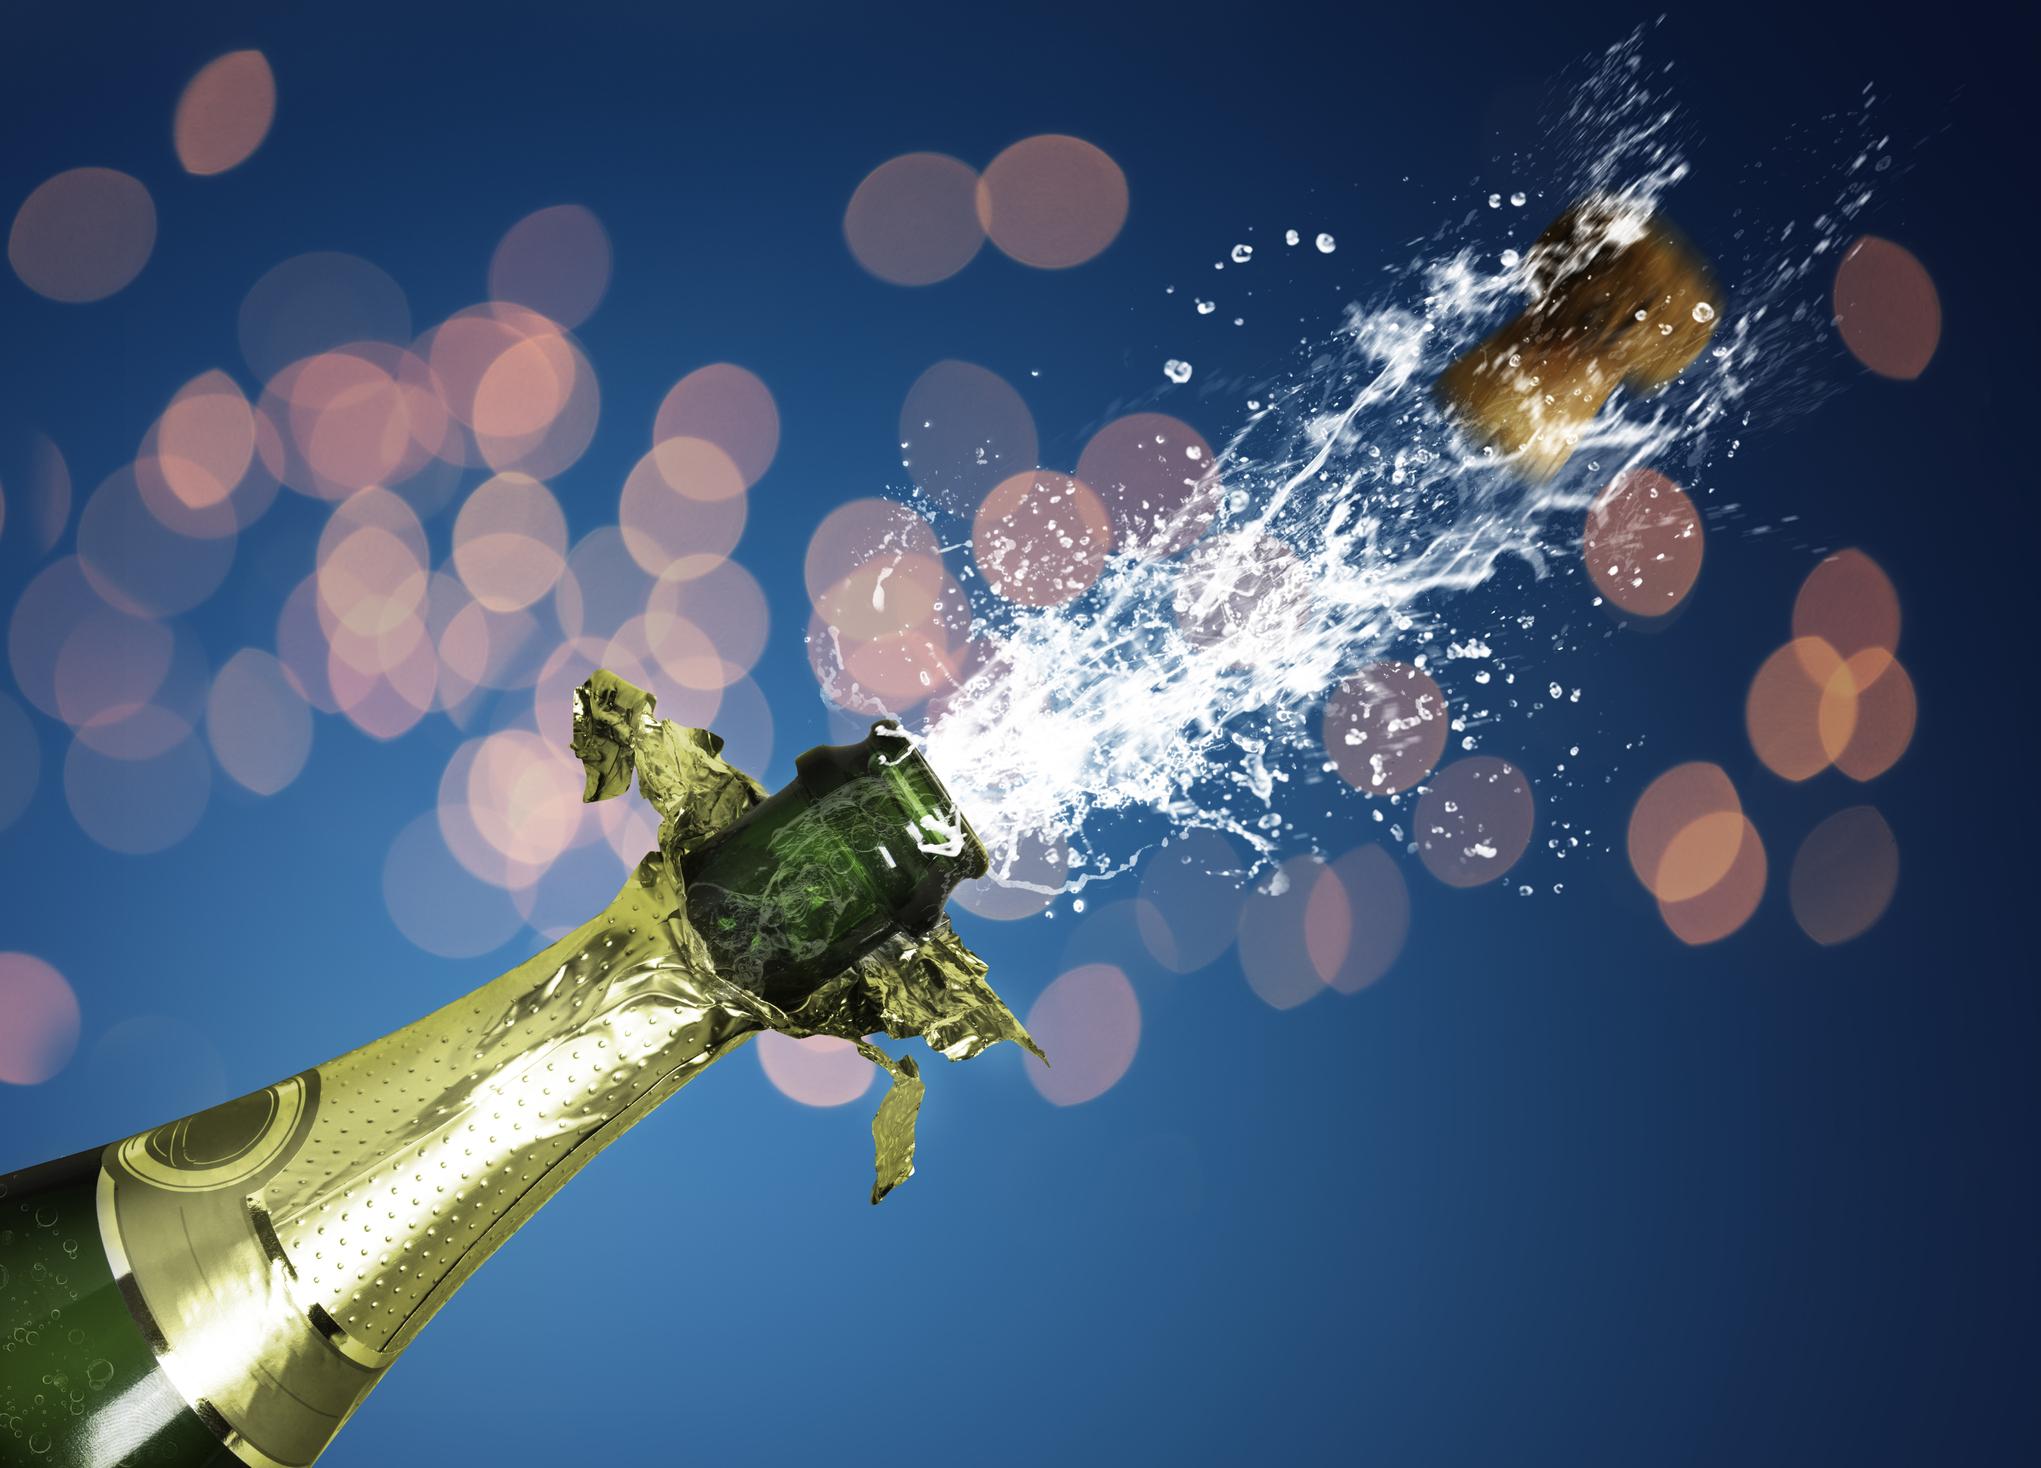 Lésions oculaires : attention aux bouchons de champagne durant les fêtes ! 